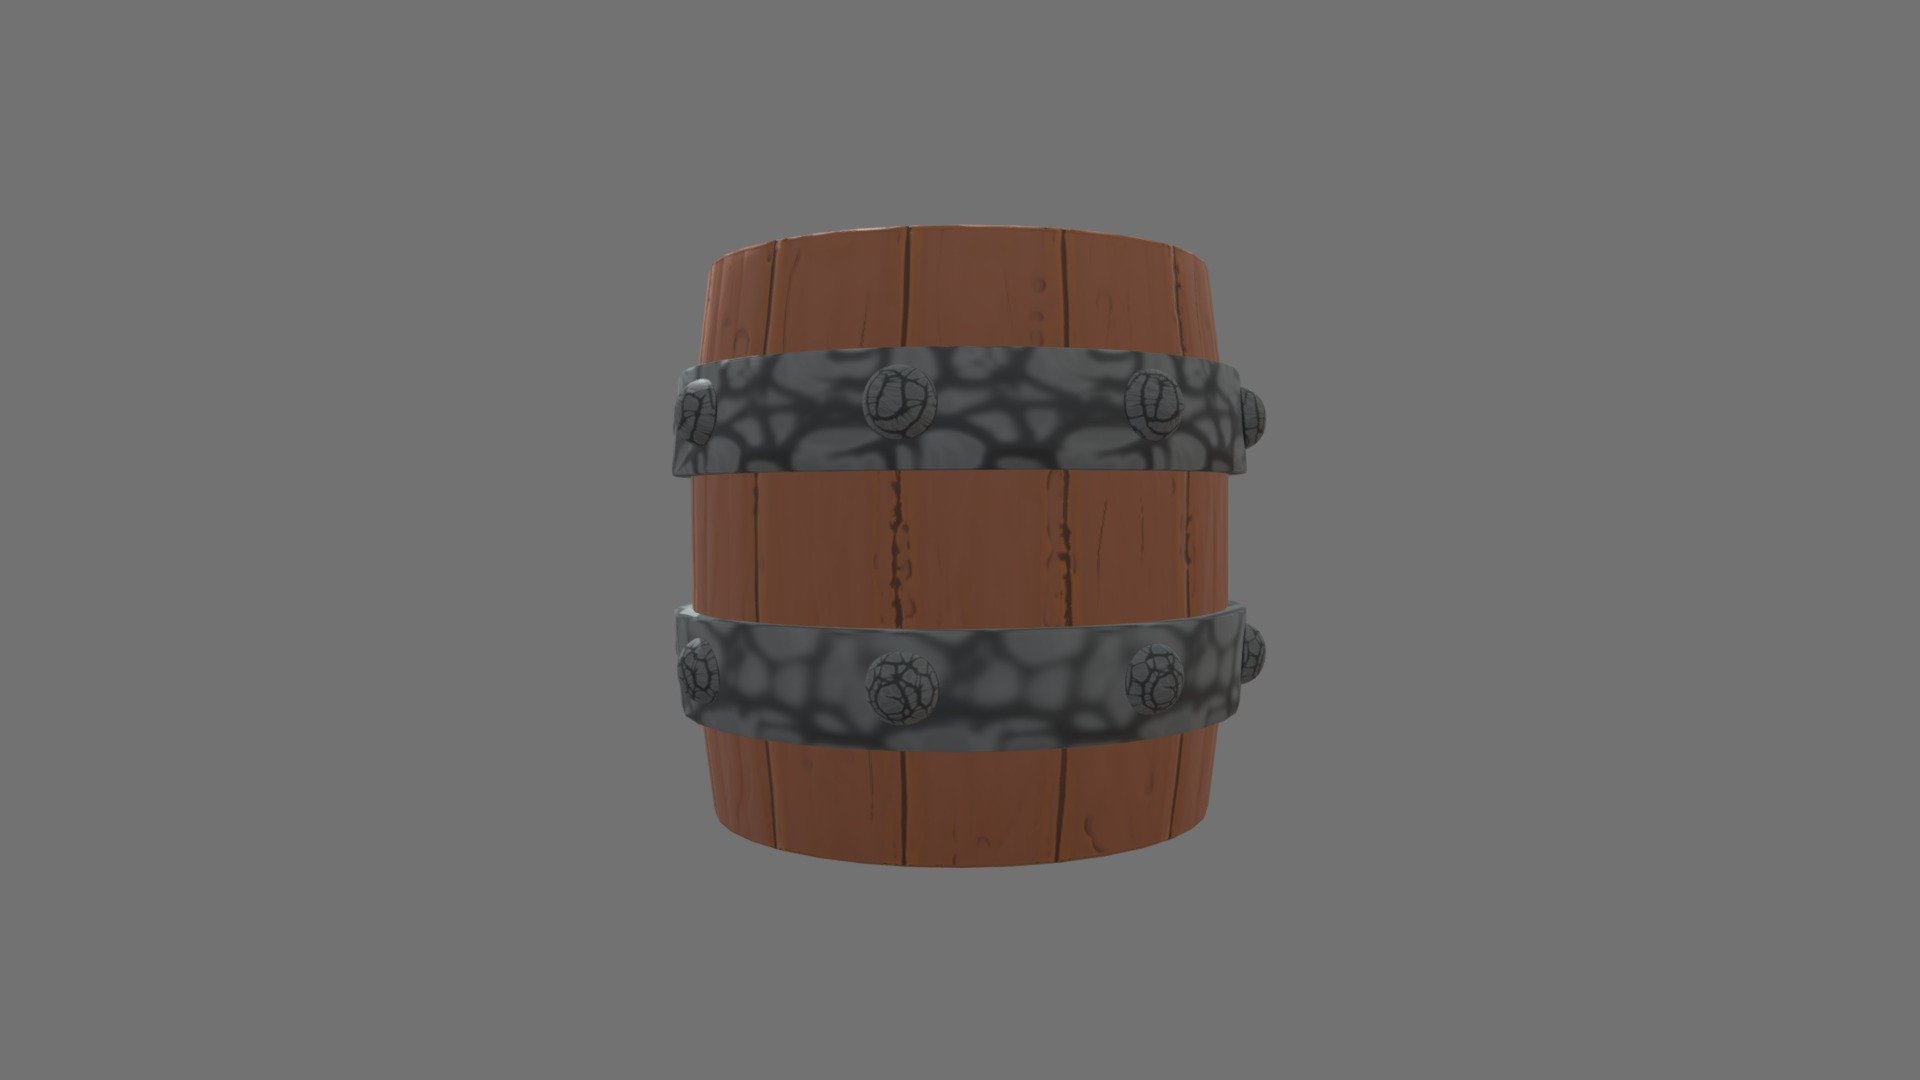 Wooden cartoony barrel